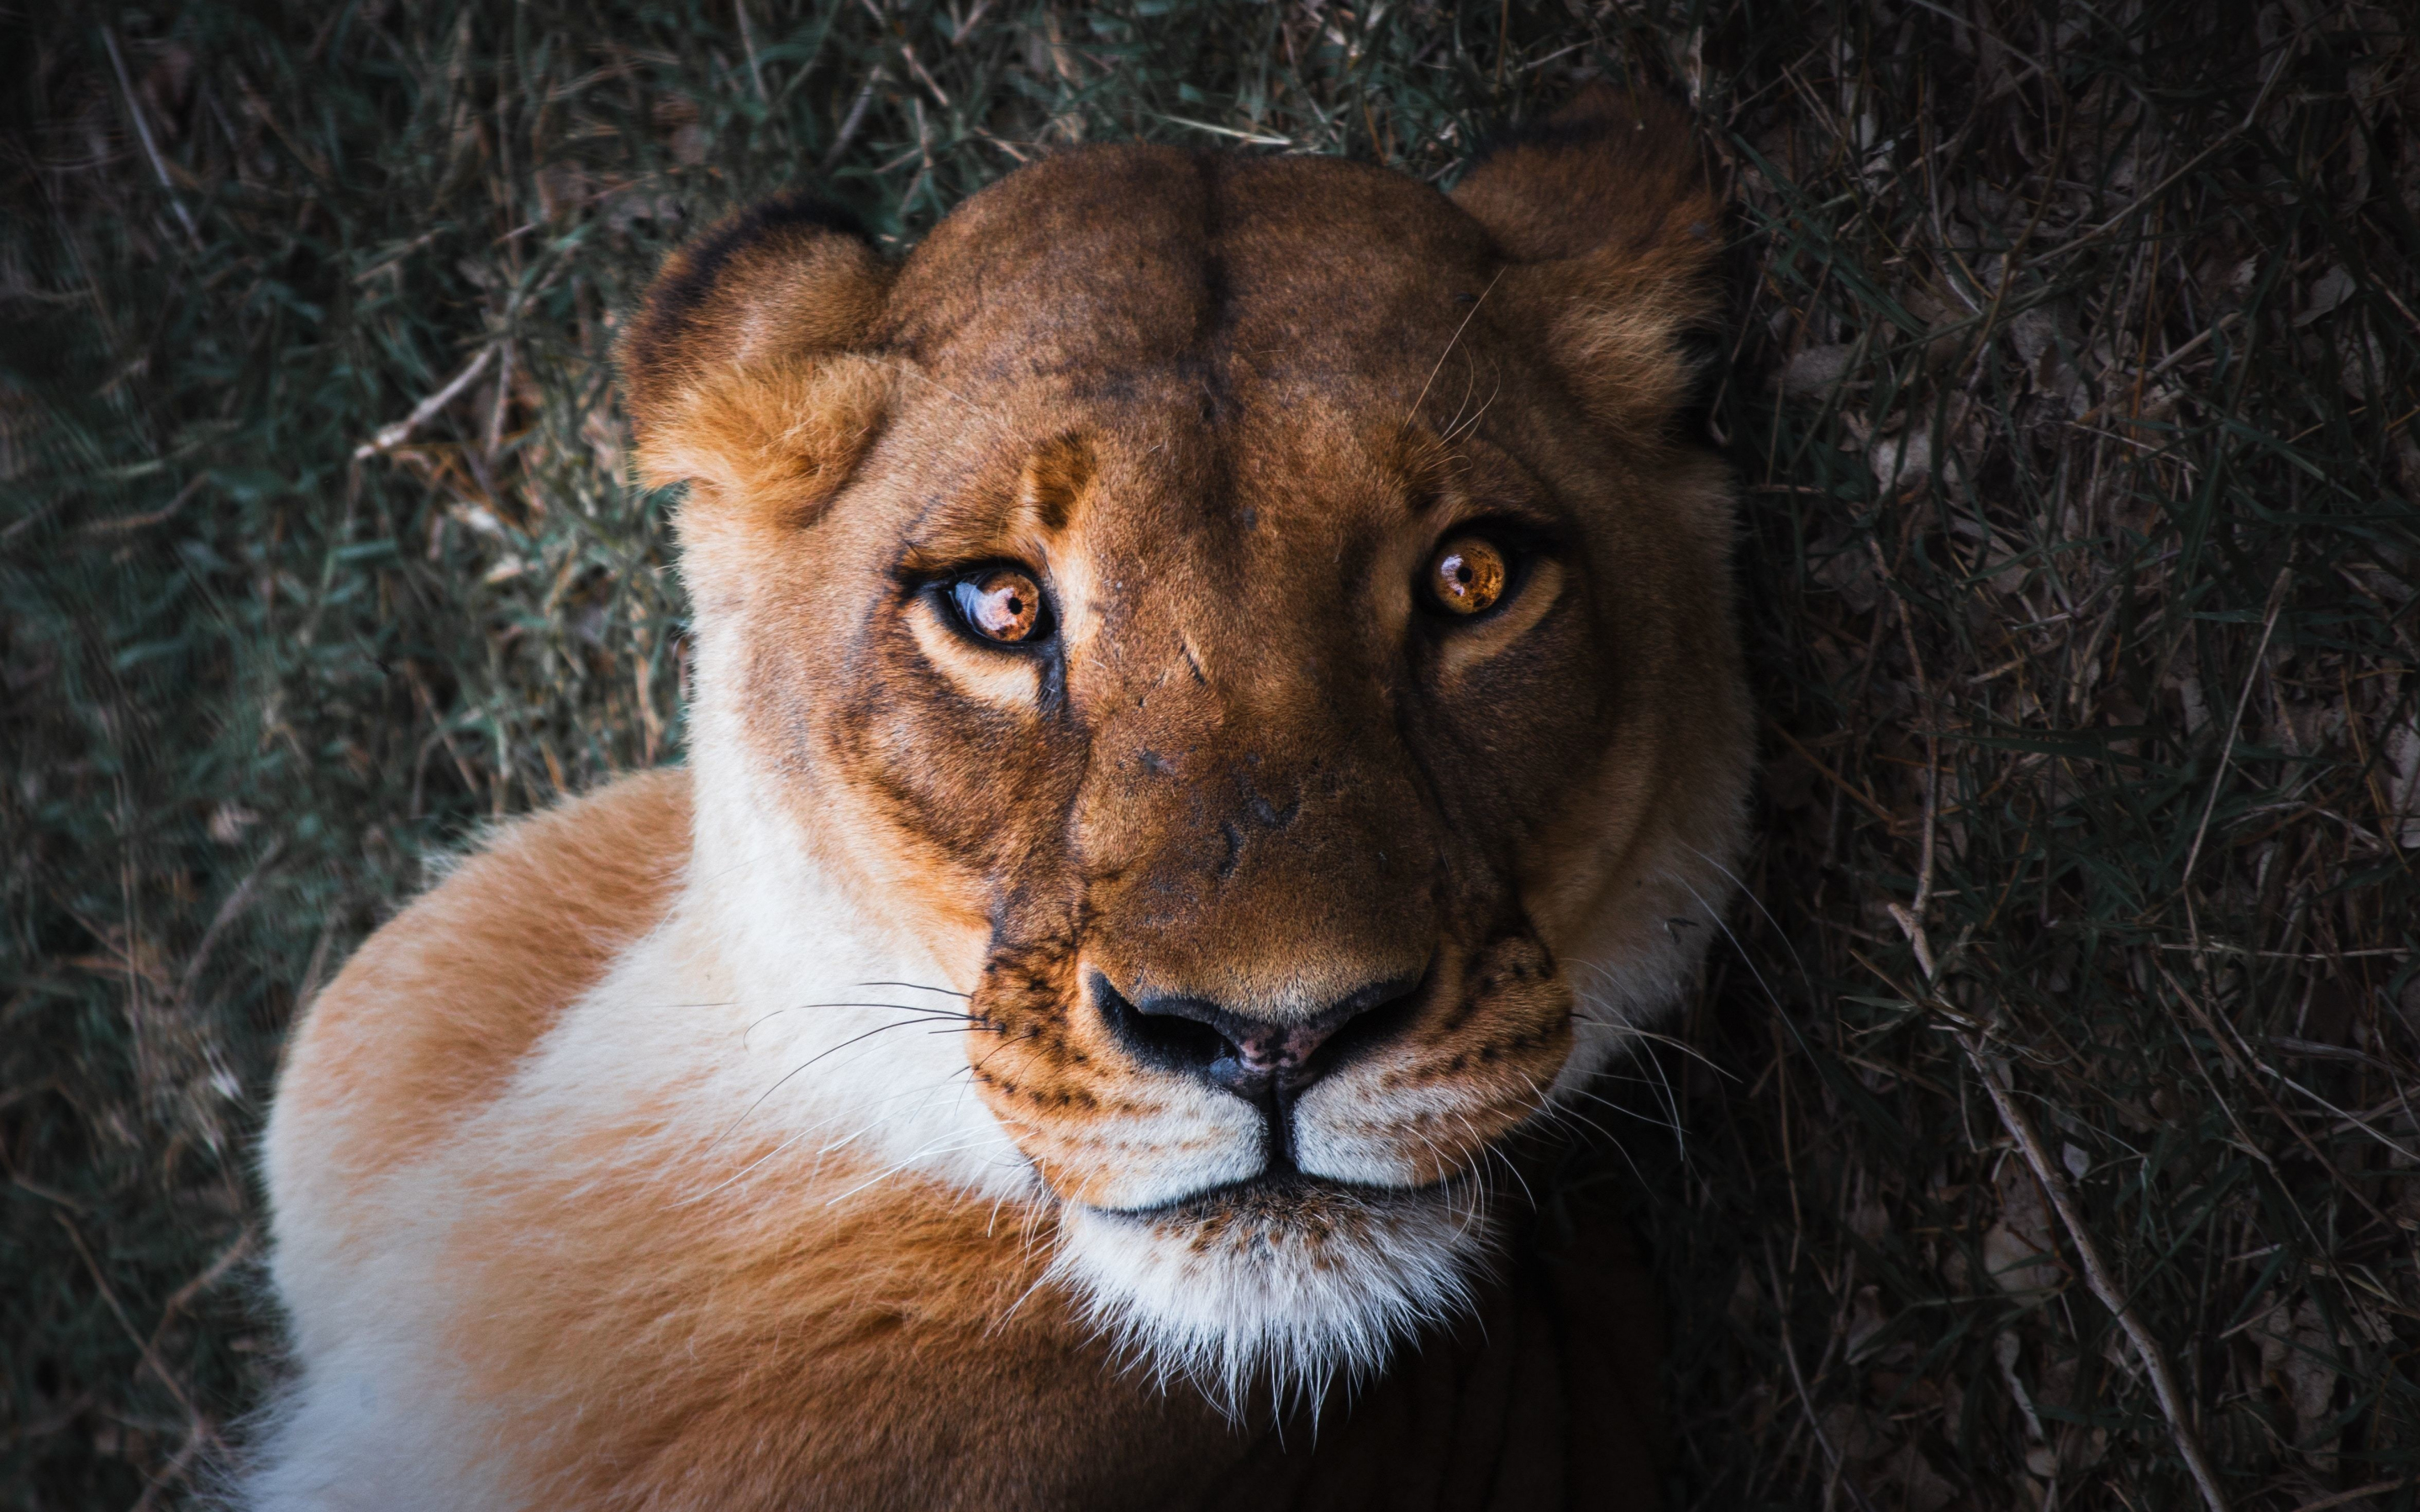 Lioness, female lion, curious, muzzle, close up, 2880x1800 wallpaper